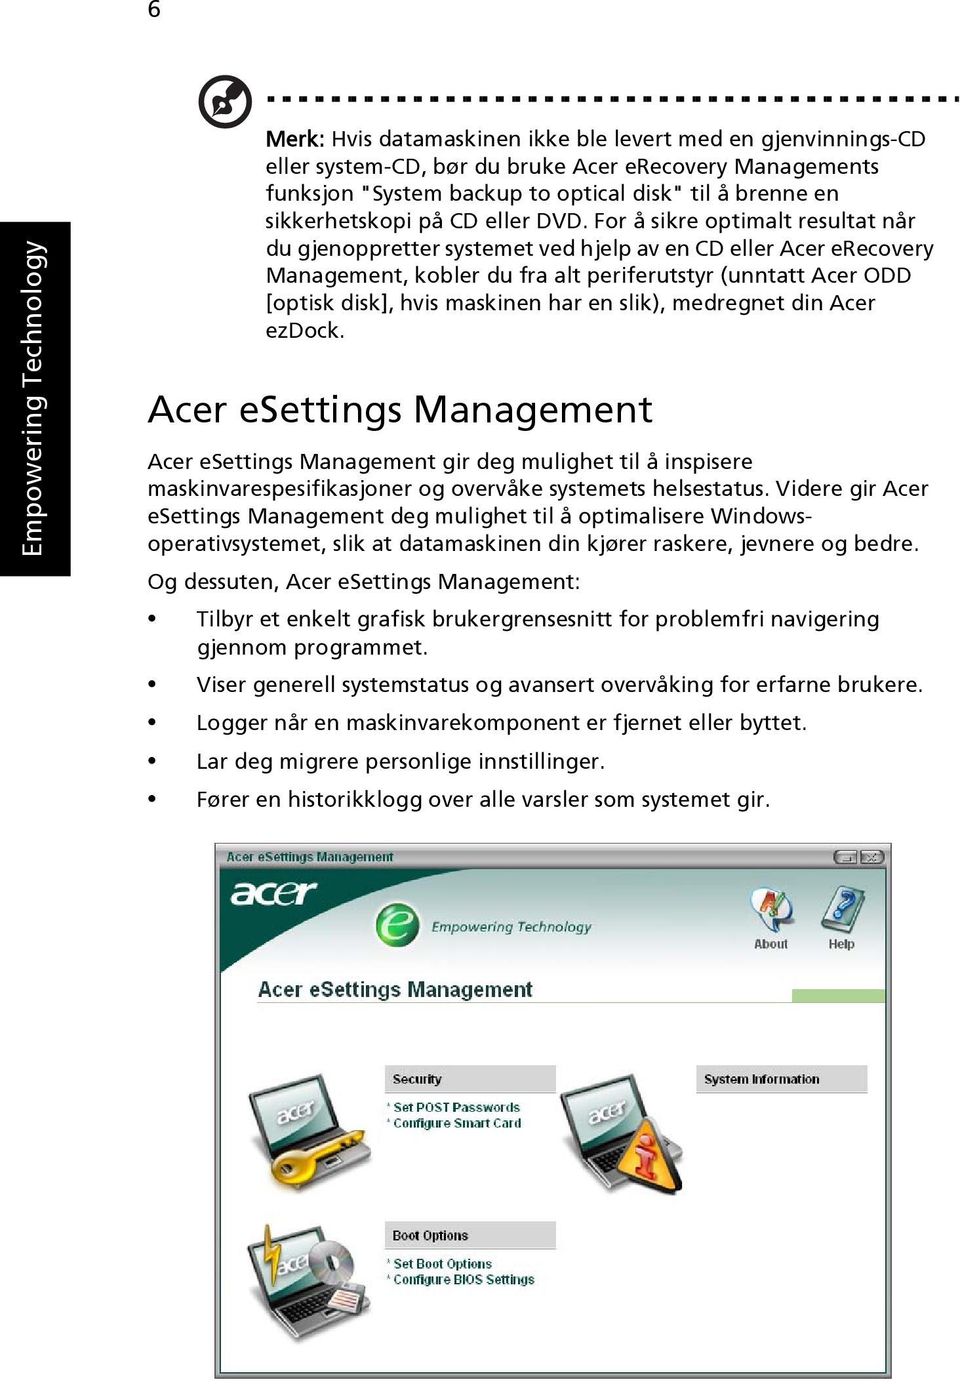 For å sikre optimalt resultat når du gjenoppretter systemet ved hjelp av en CD eller Acer erecovery Management, kobler du fra alt periferutstyr (unntatt Acer ODD [optisk disk], hvis maskinen har en